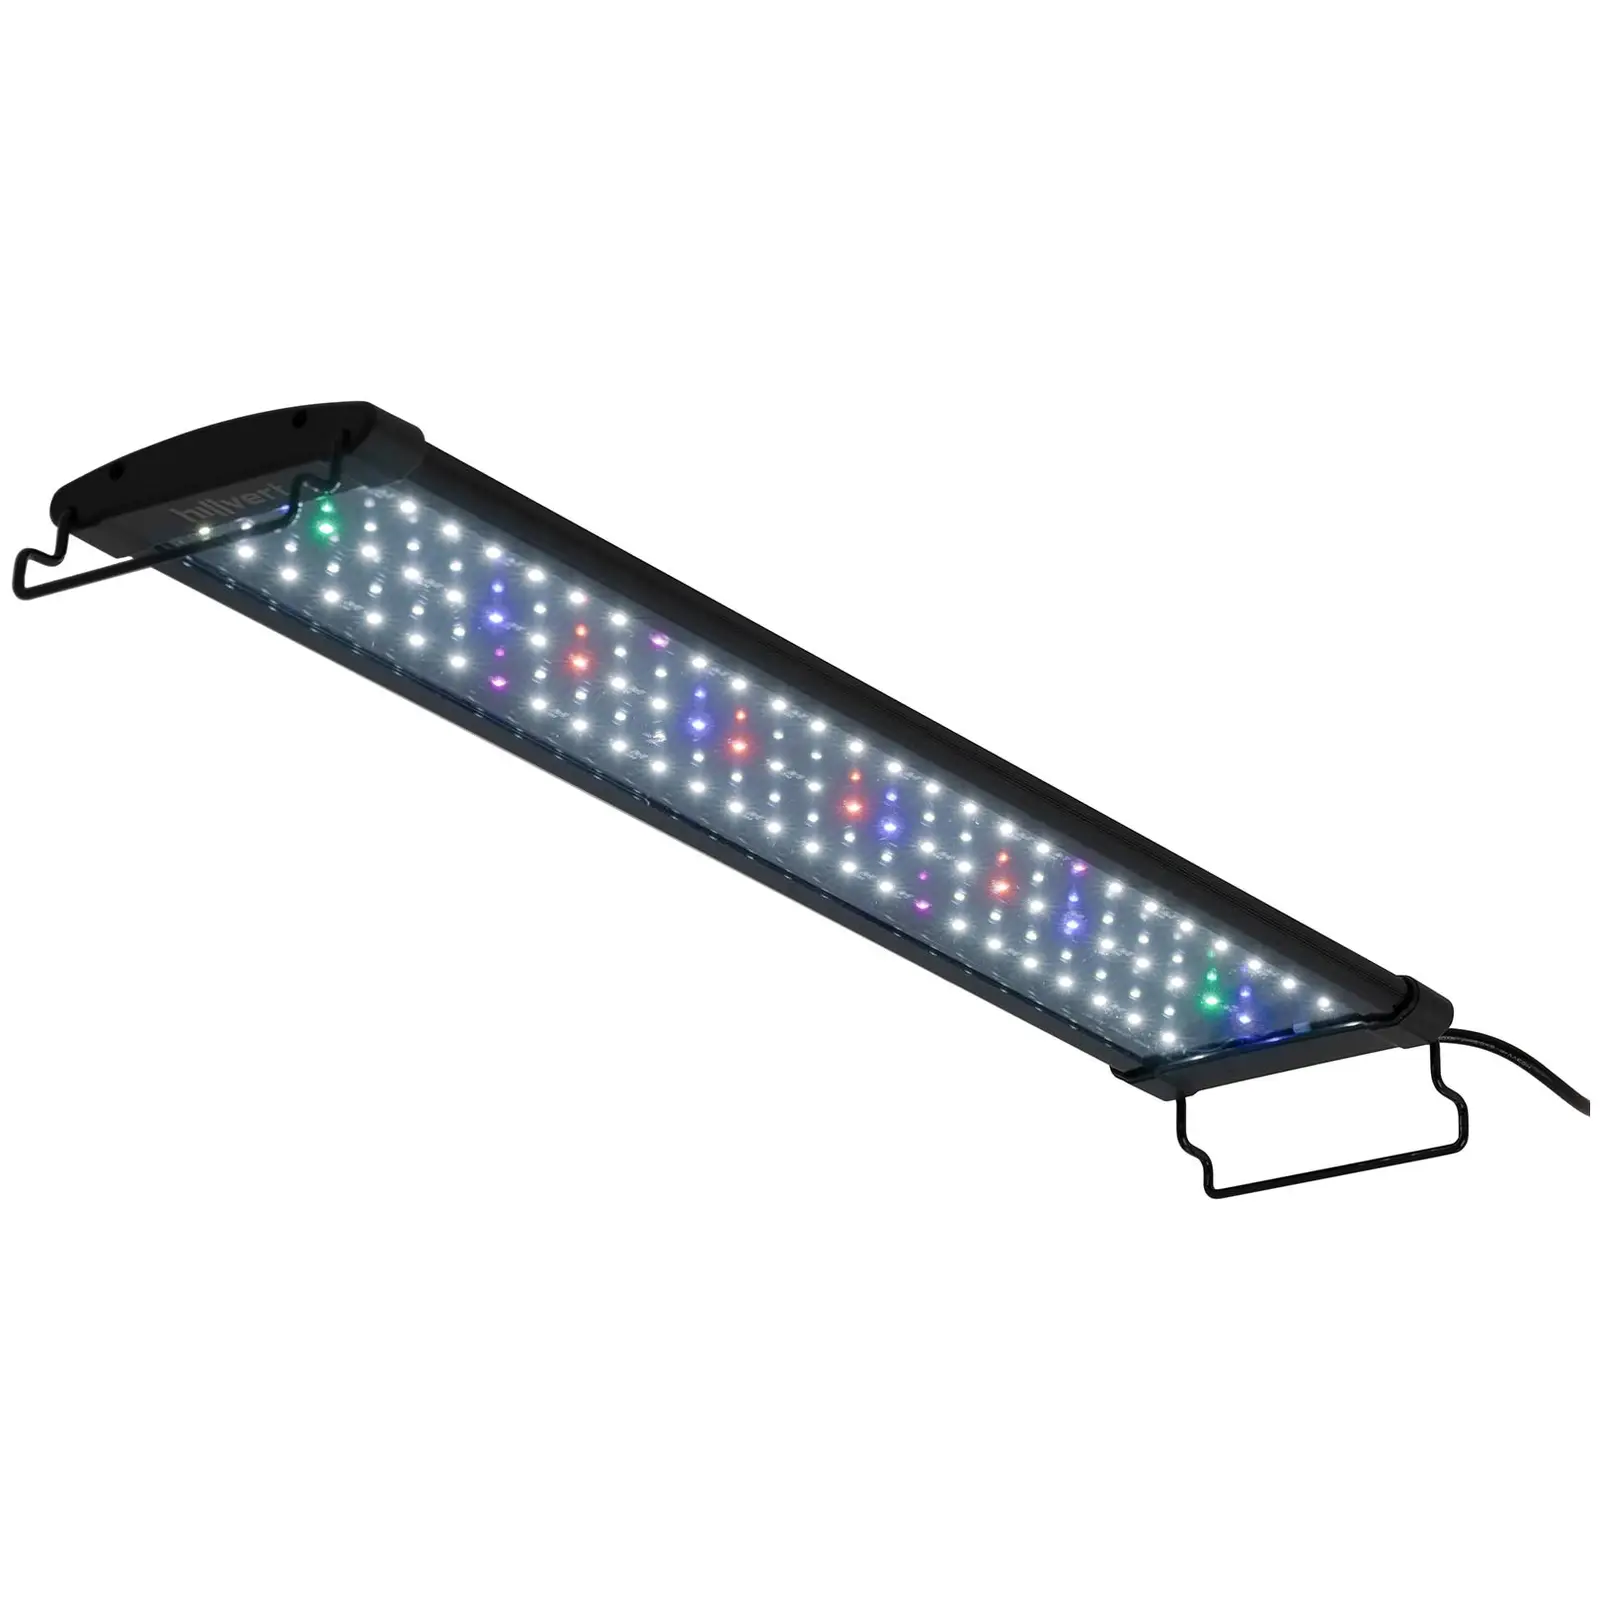 Leer Duplicación Es decir LED para acuario - 78 LED - 18 W - 60 cm | www.expondo.es